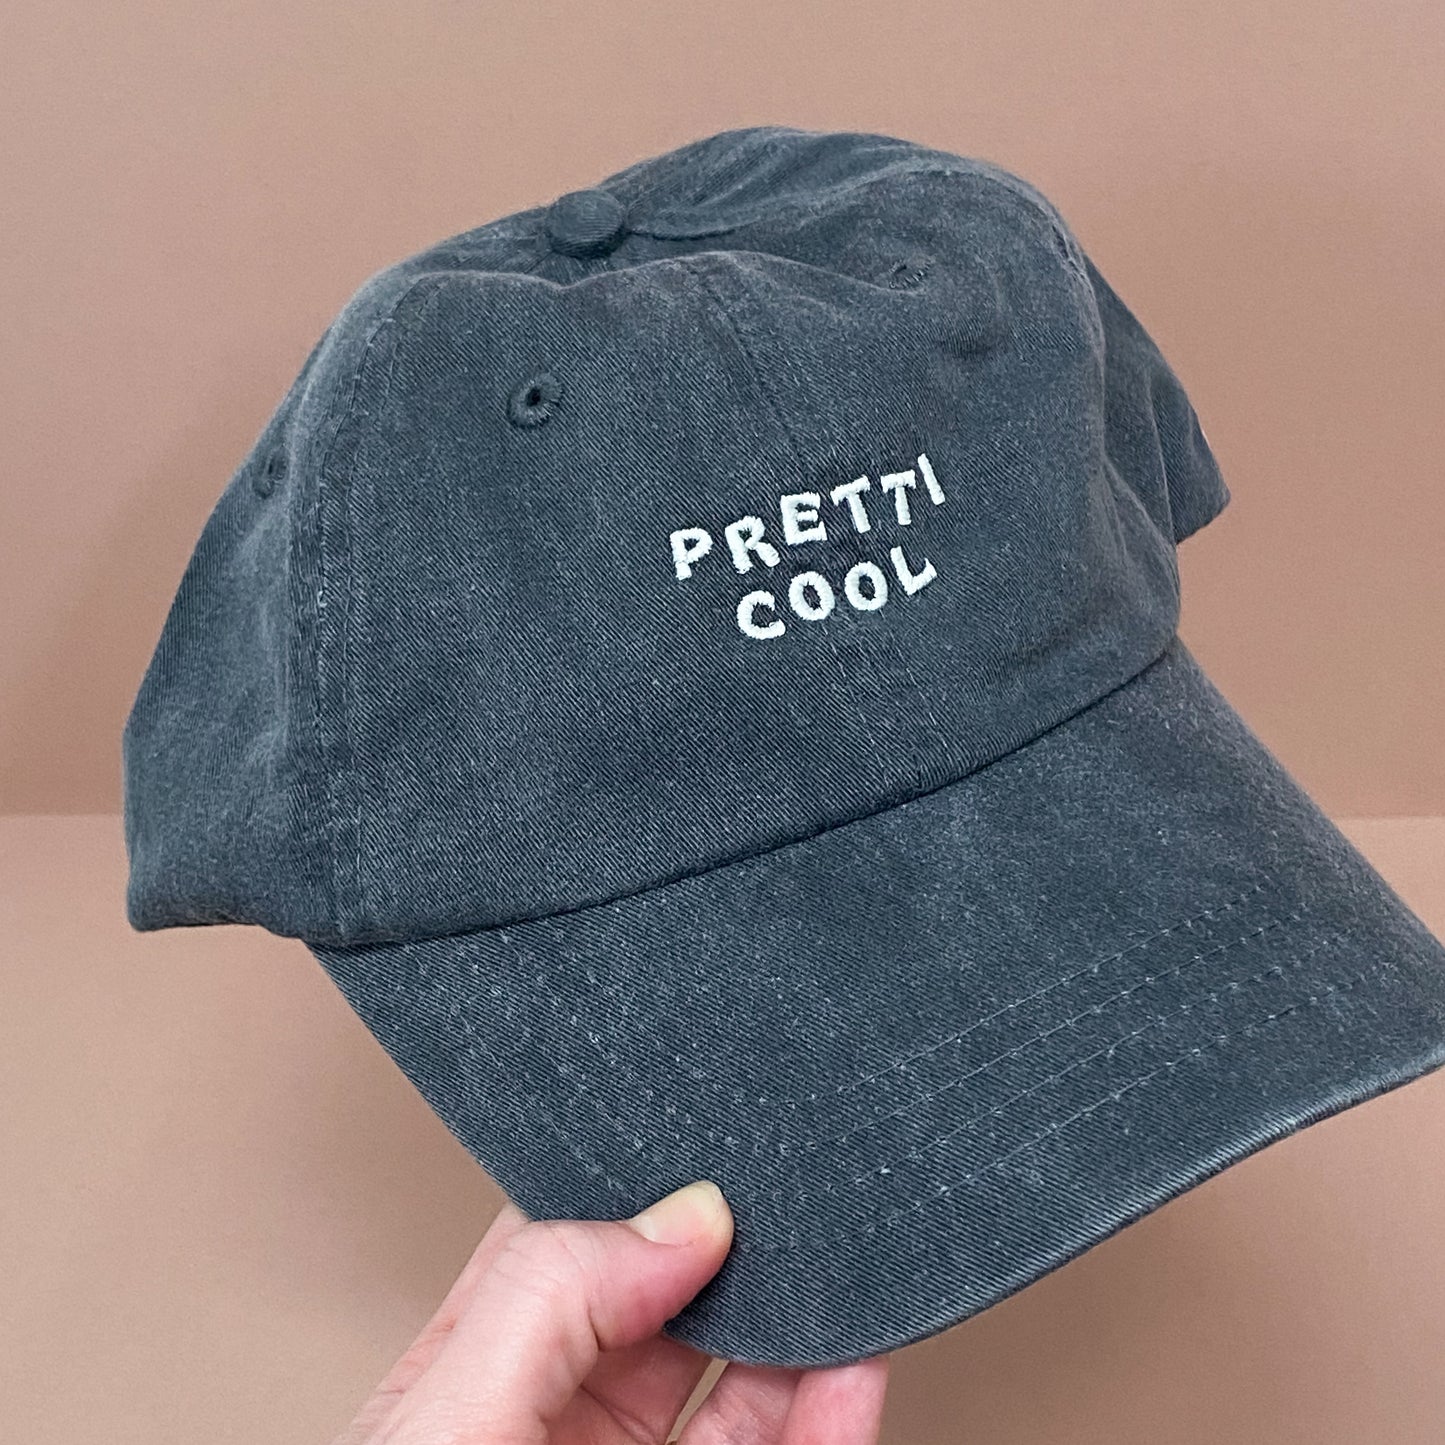 Pretti.Cool dad hat in faded black w/ cream embroidery.